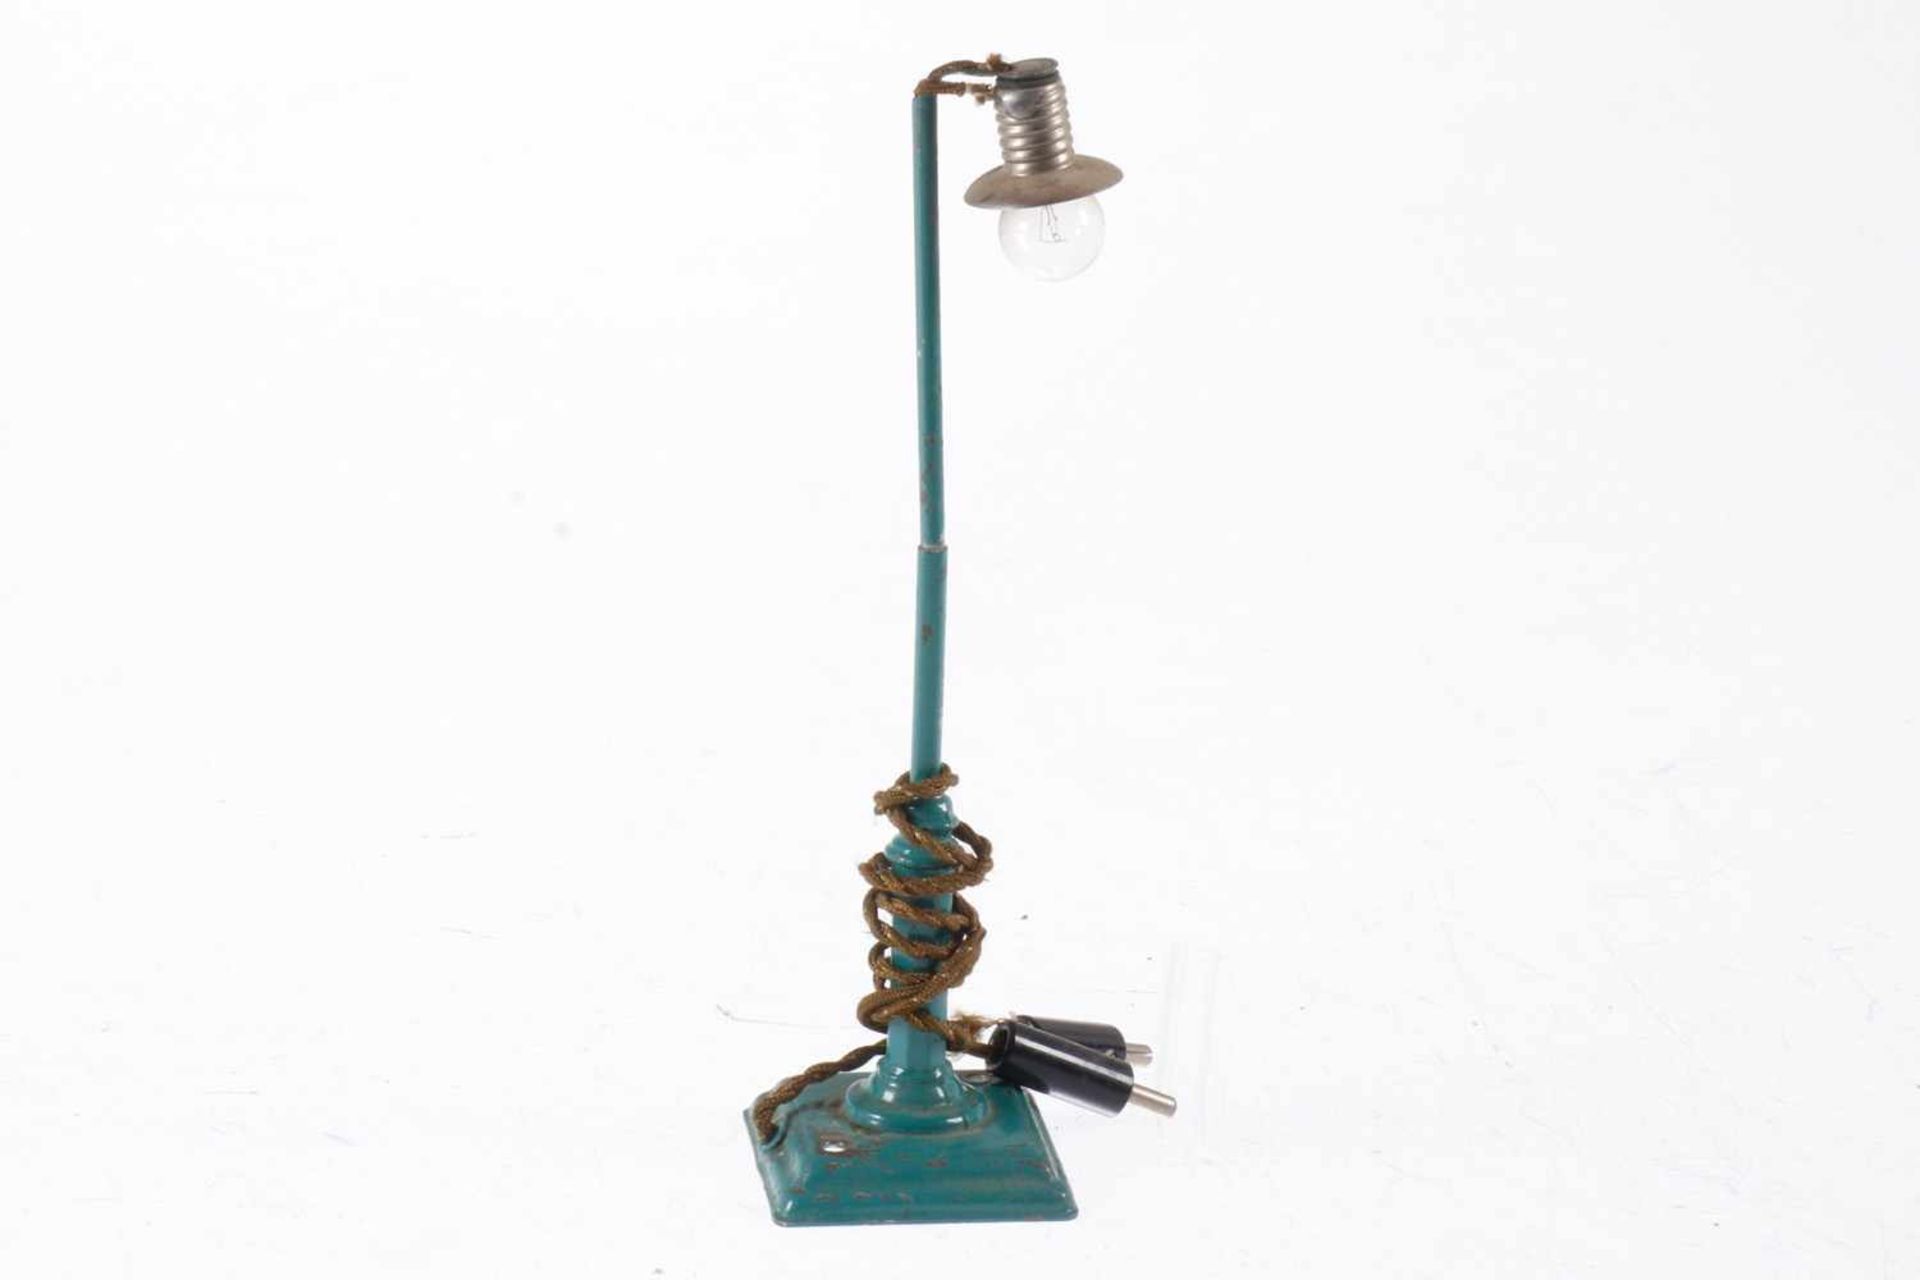 Märklin Bogenlampe 13449, elektr., HL, mit 2 Fremdbohrungen, leicht verbogen, LS und gealterter